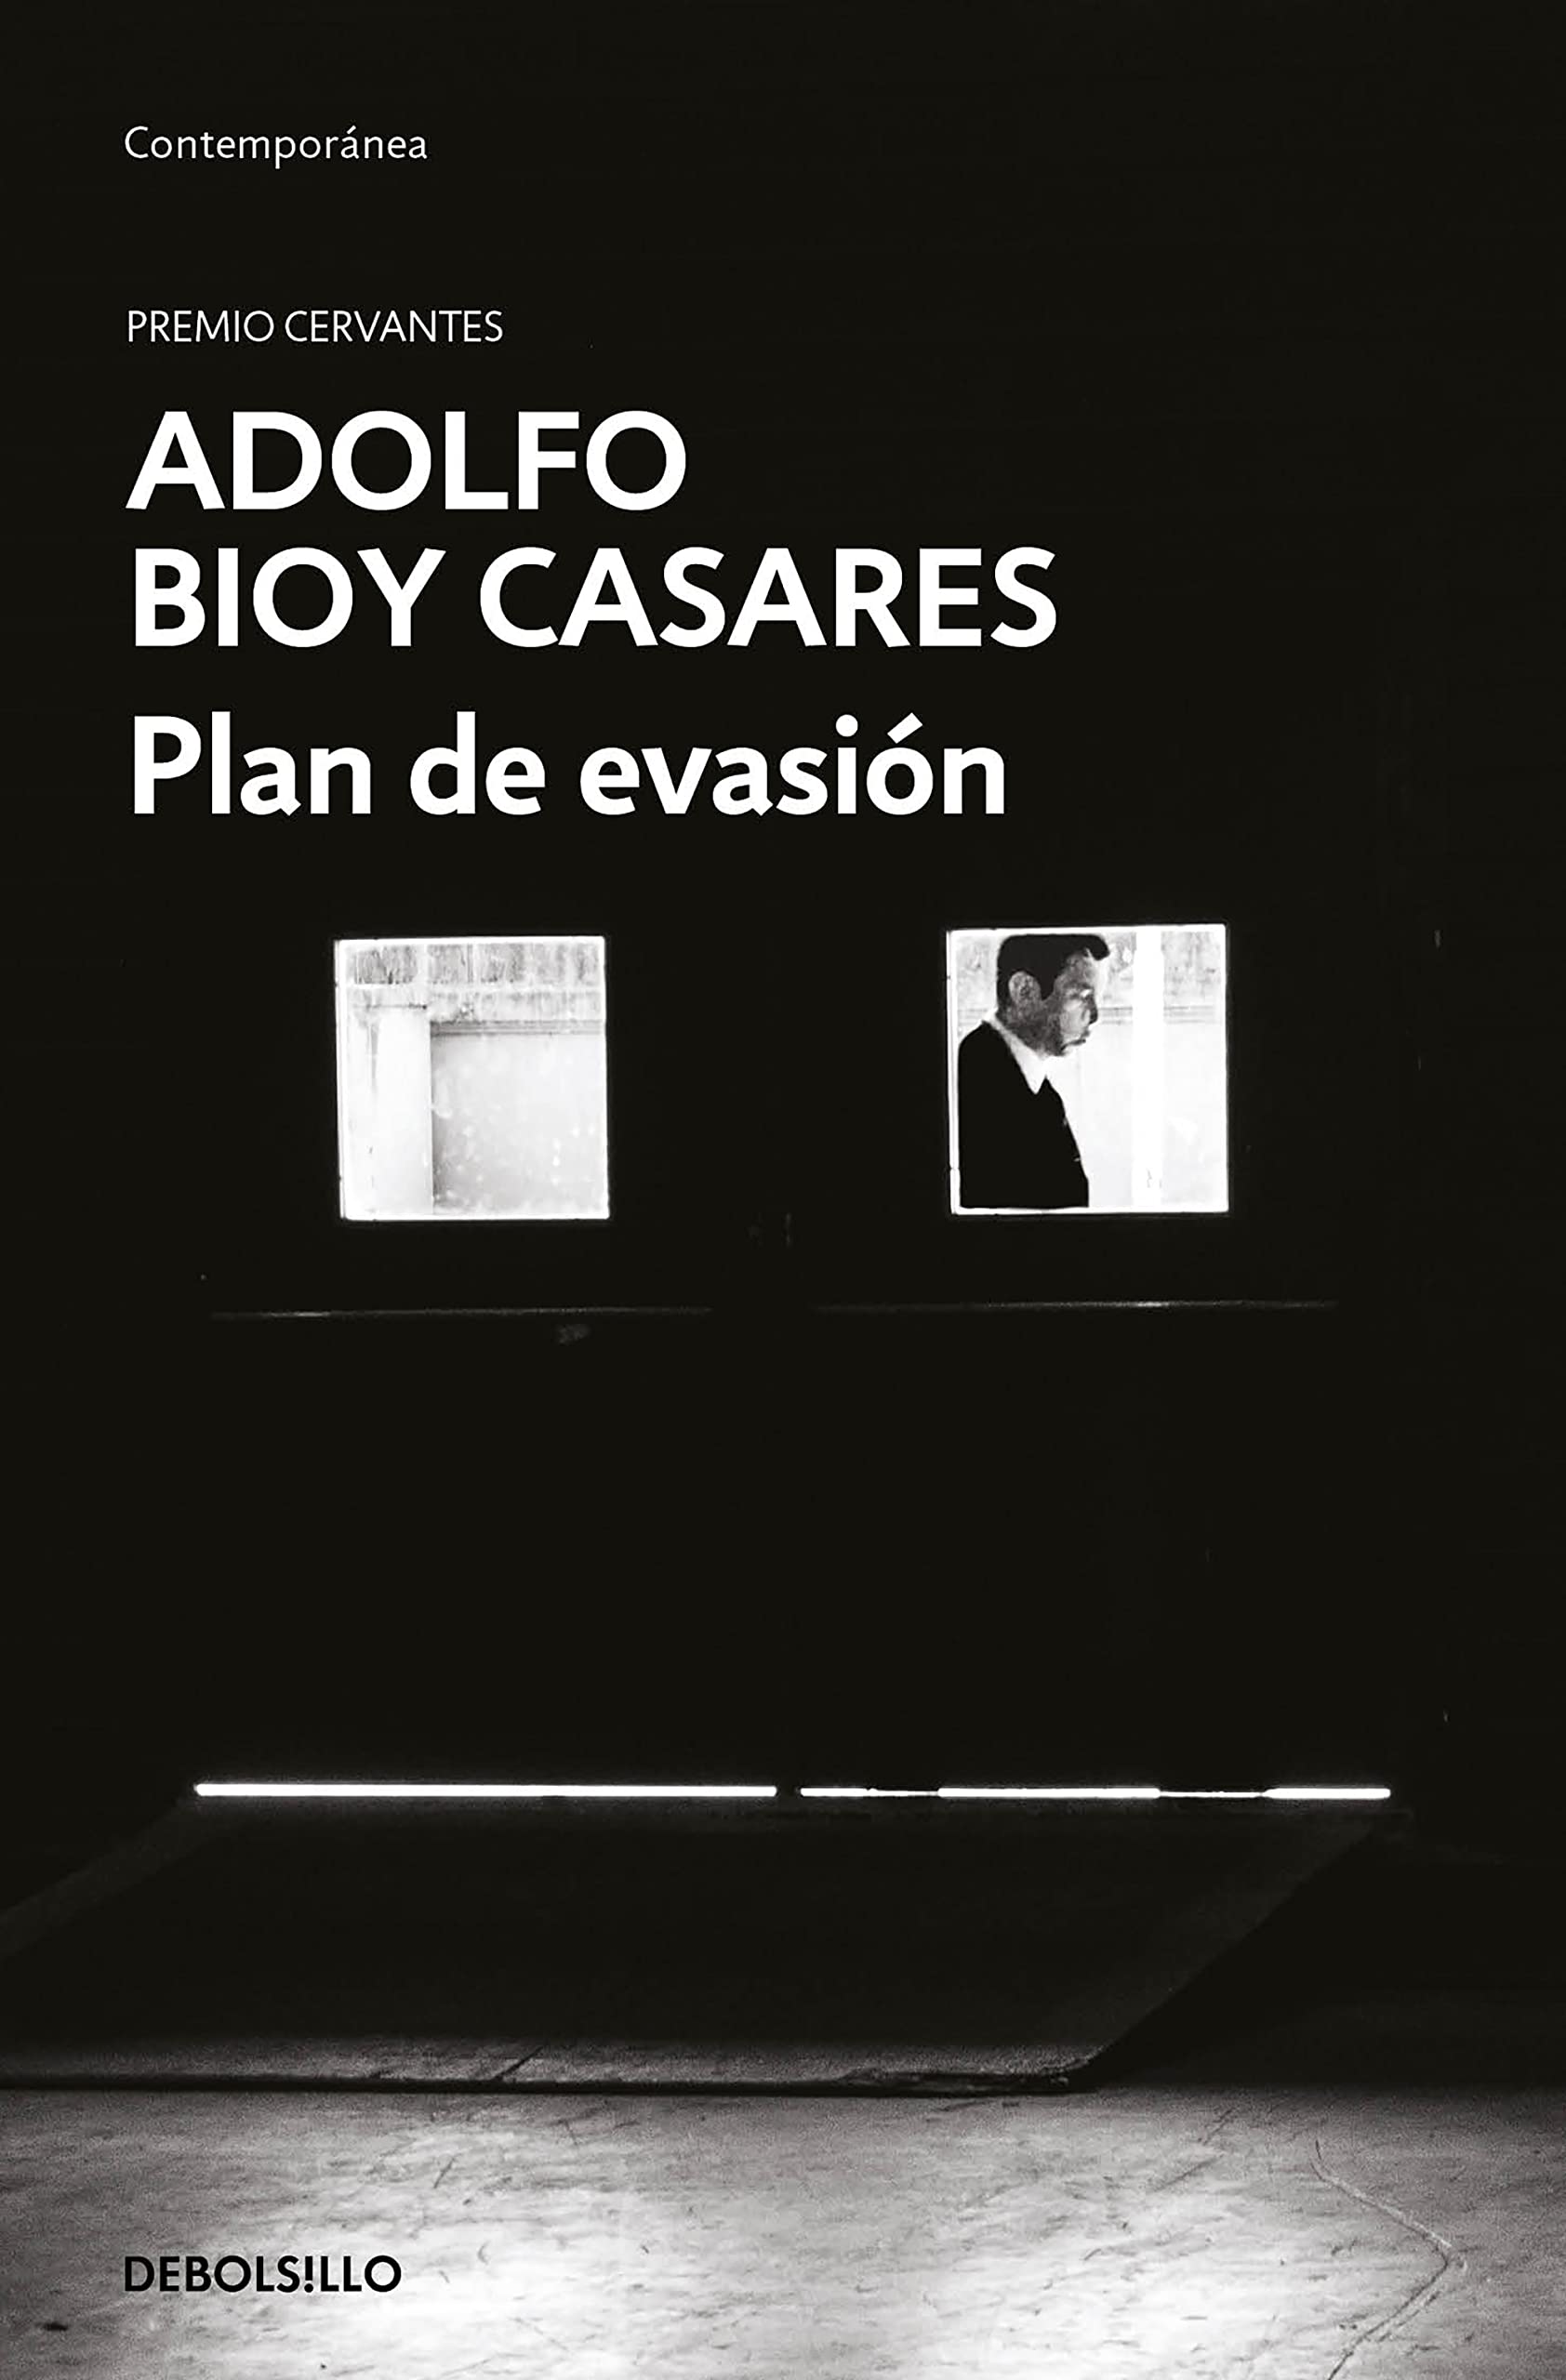 Zenda recomienda: Plan de evasión, de Adolfo Bioy Casares